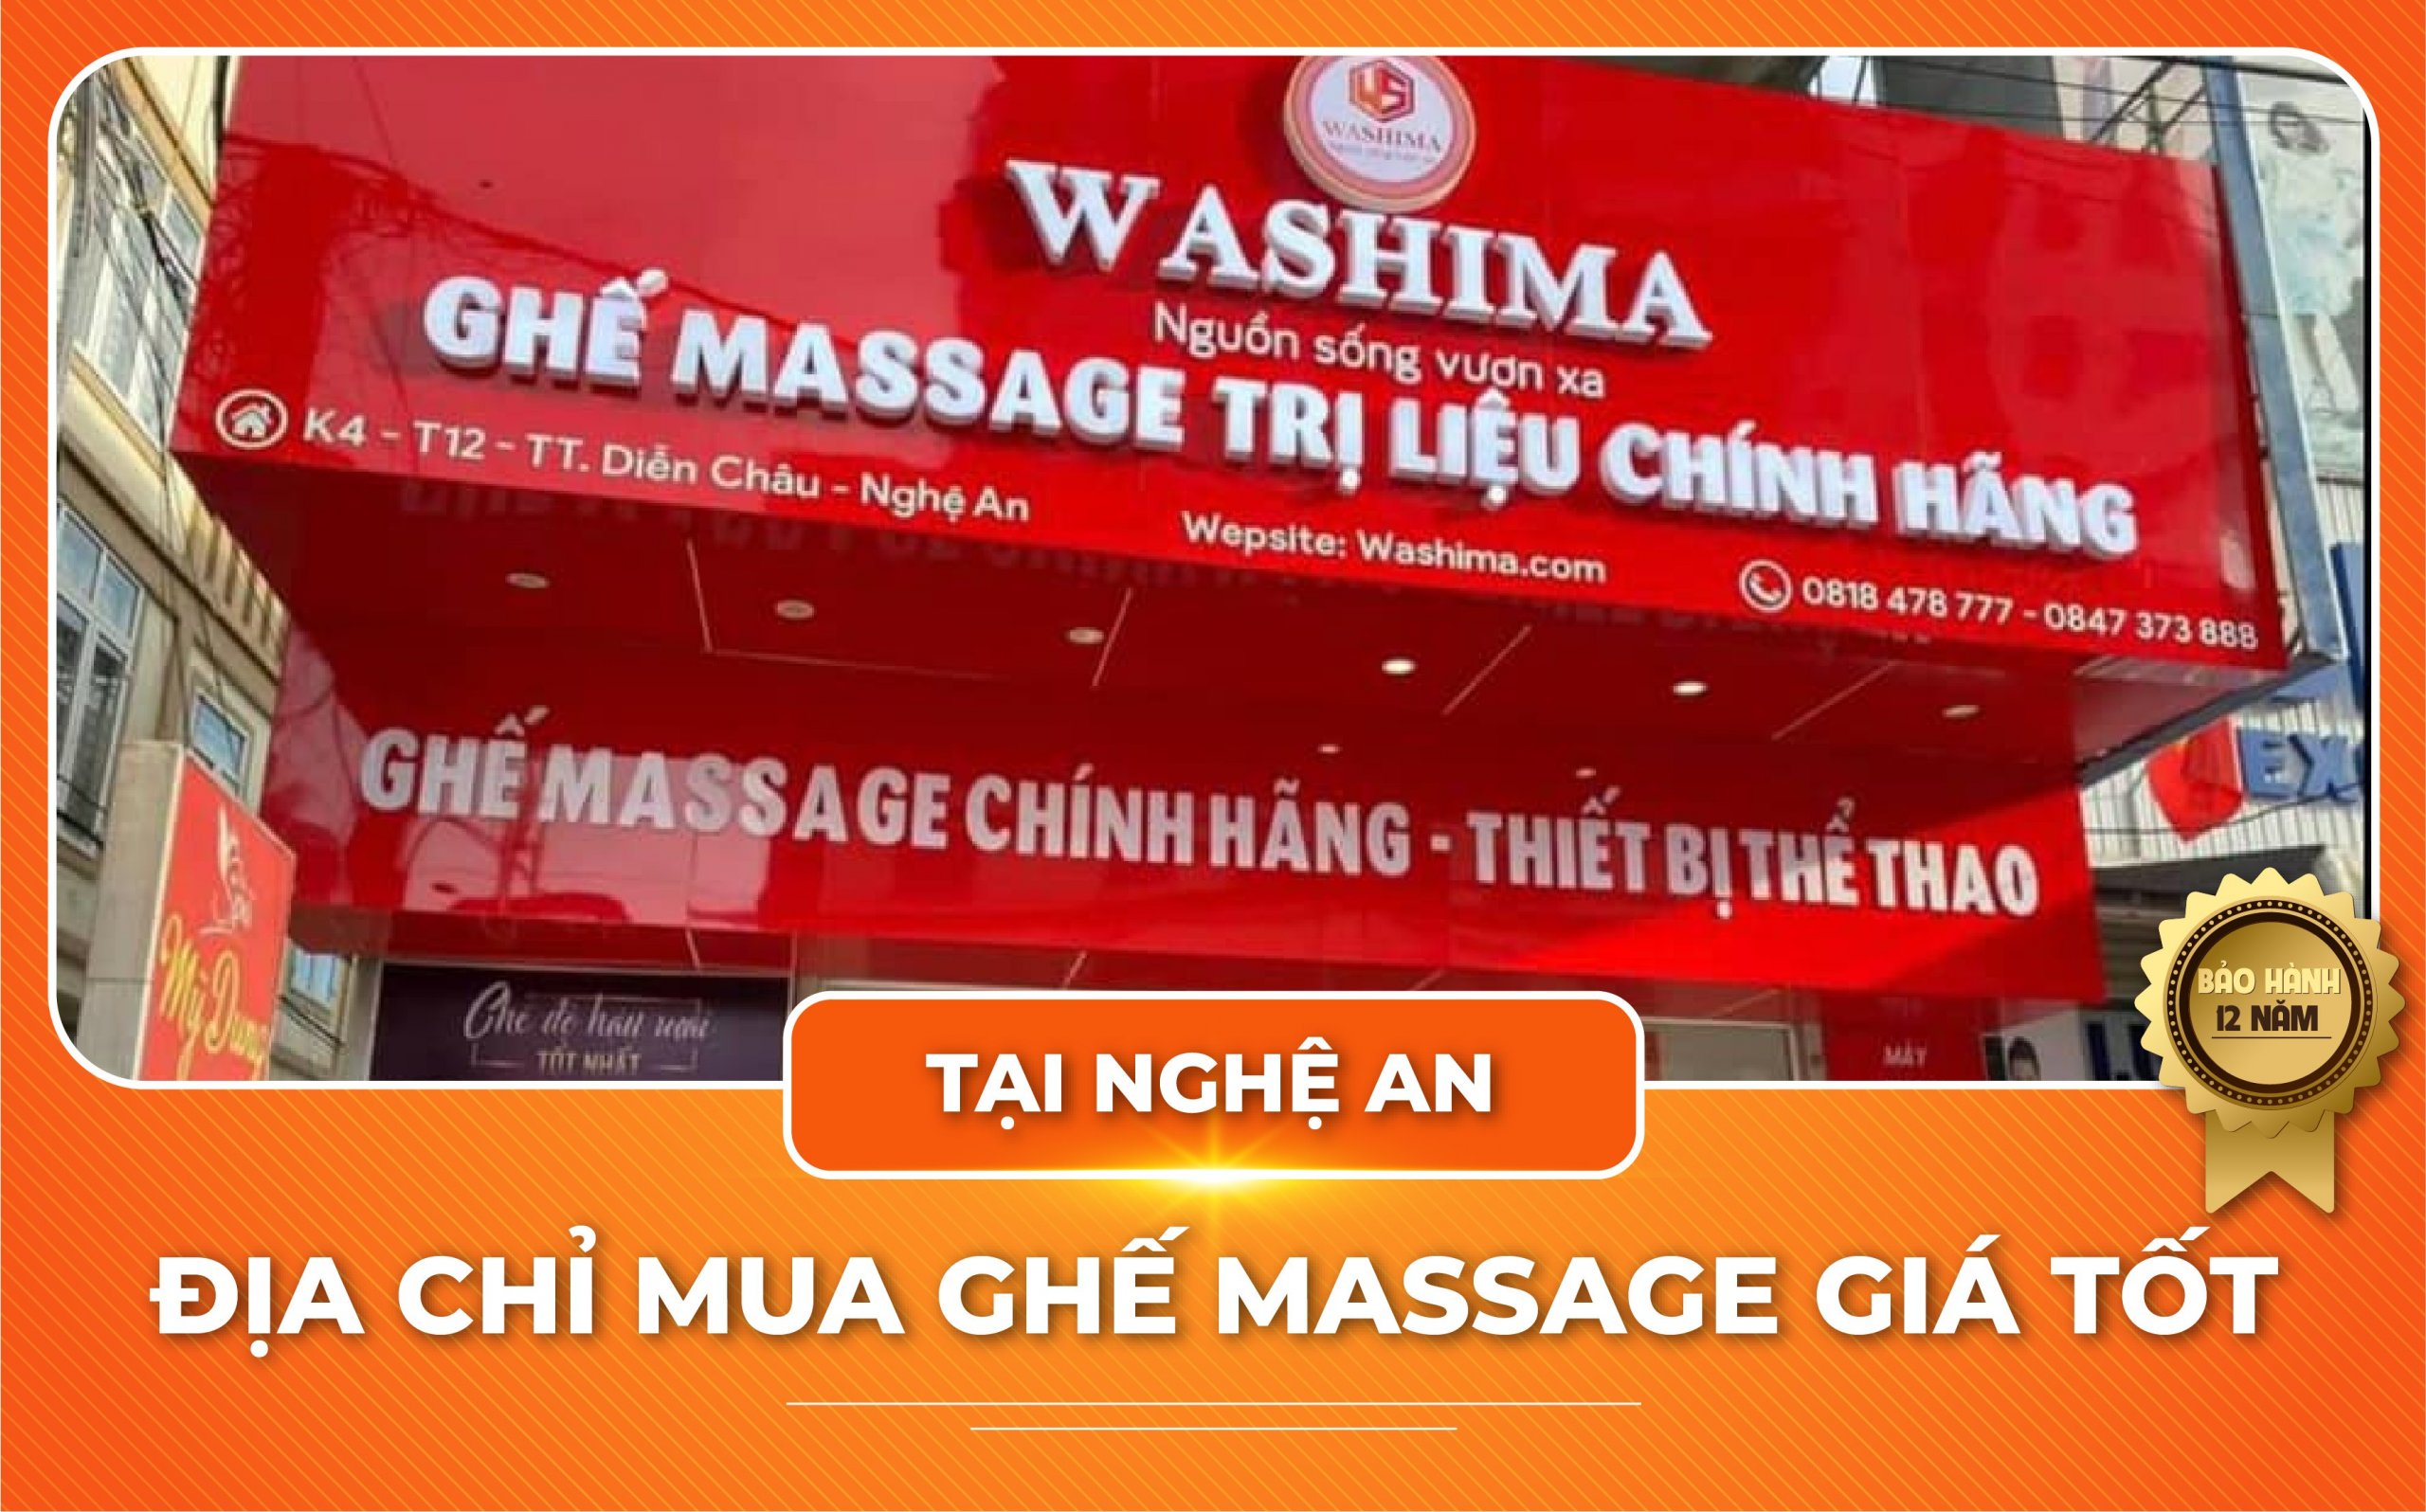 Đại lý ghế massage Washima tại Nghệ An